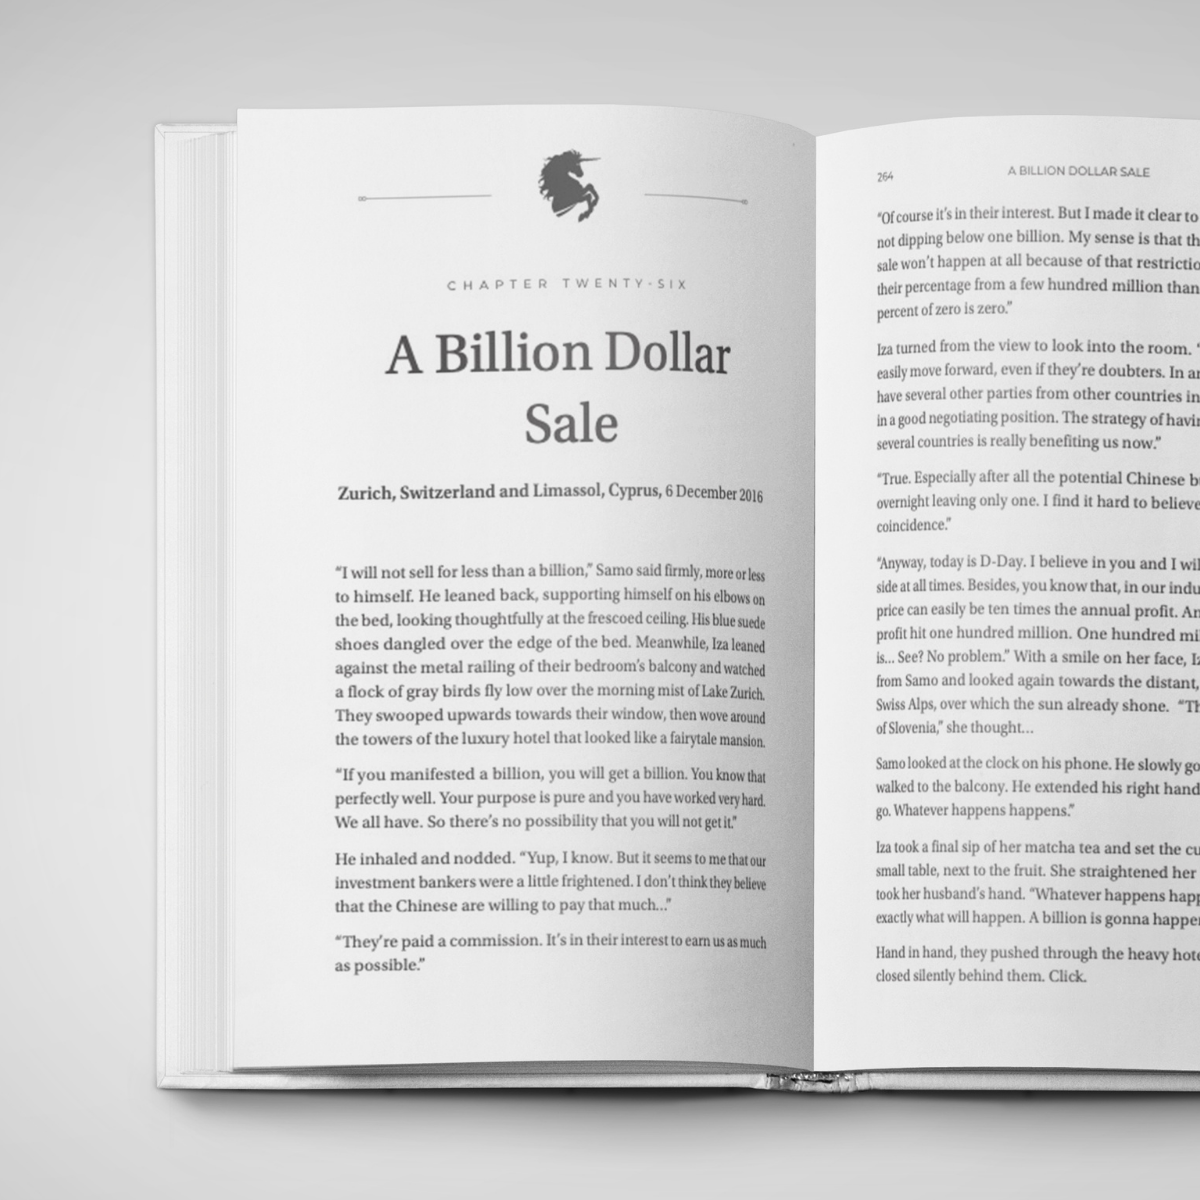 7 Unicorn Drive - A Billion Dollar Sale book chapter